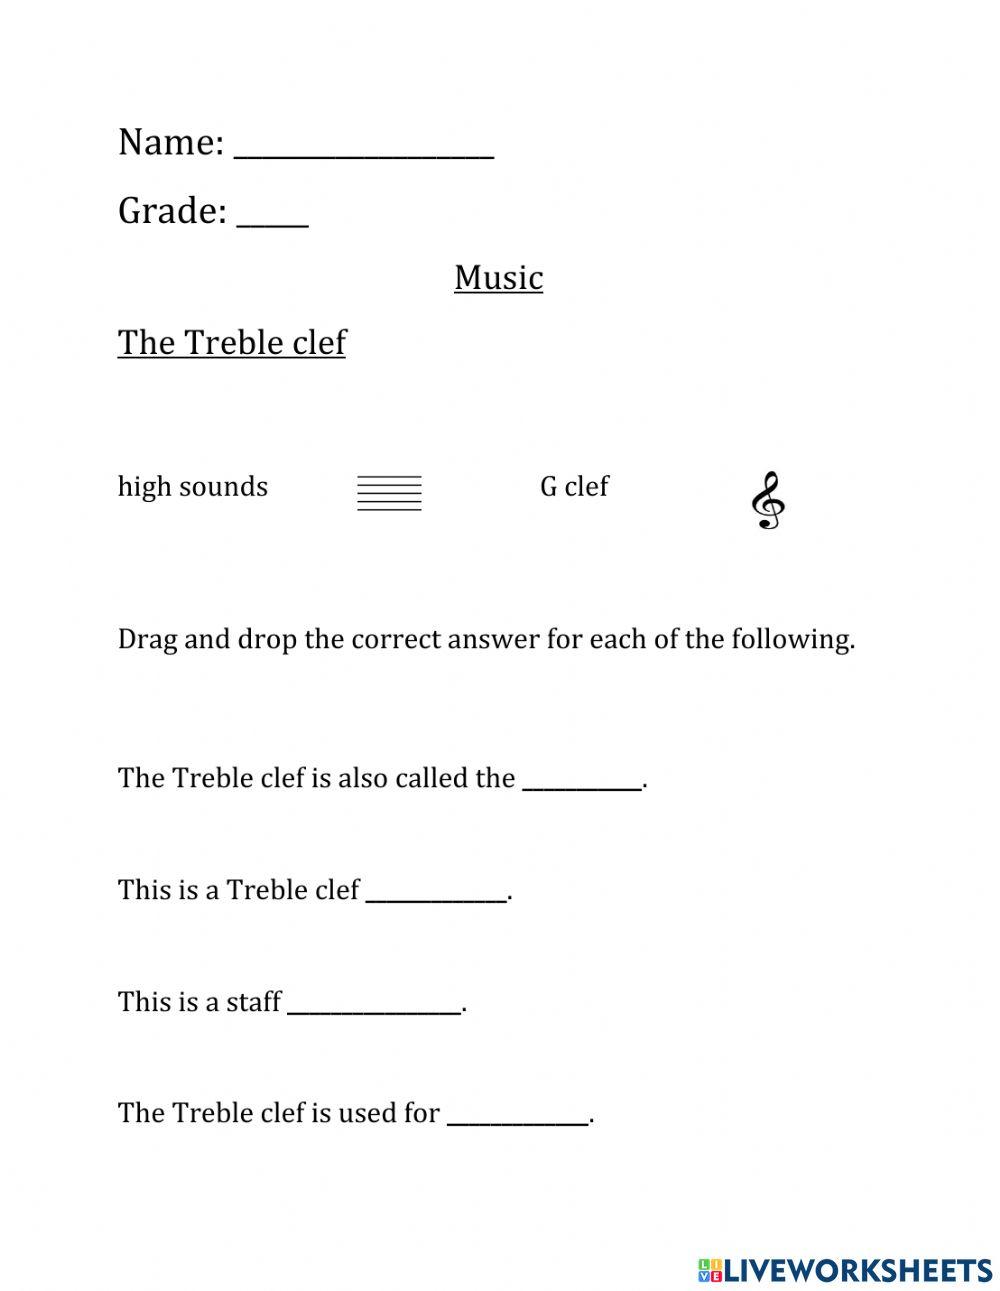 CPS Grade 3 The Treble clef